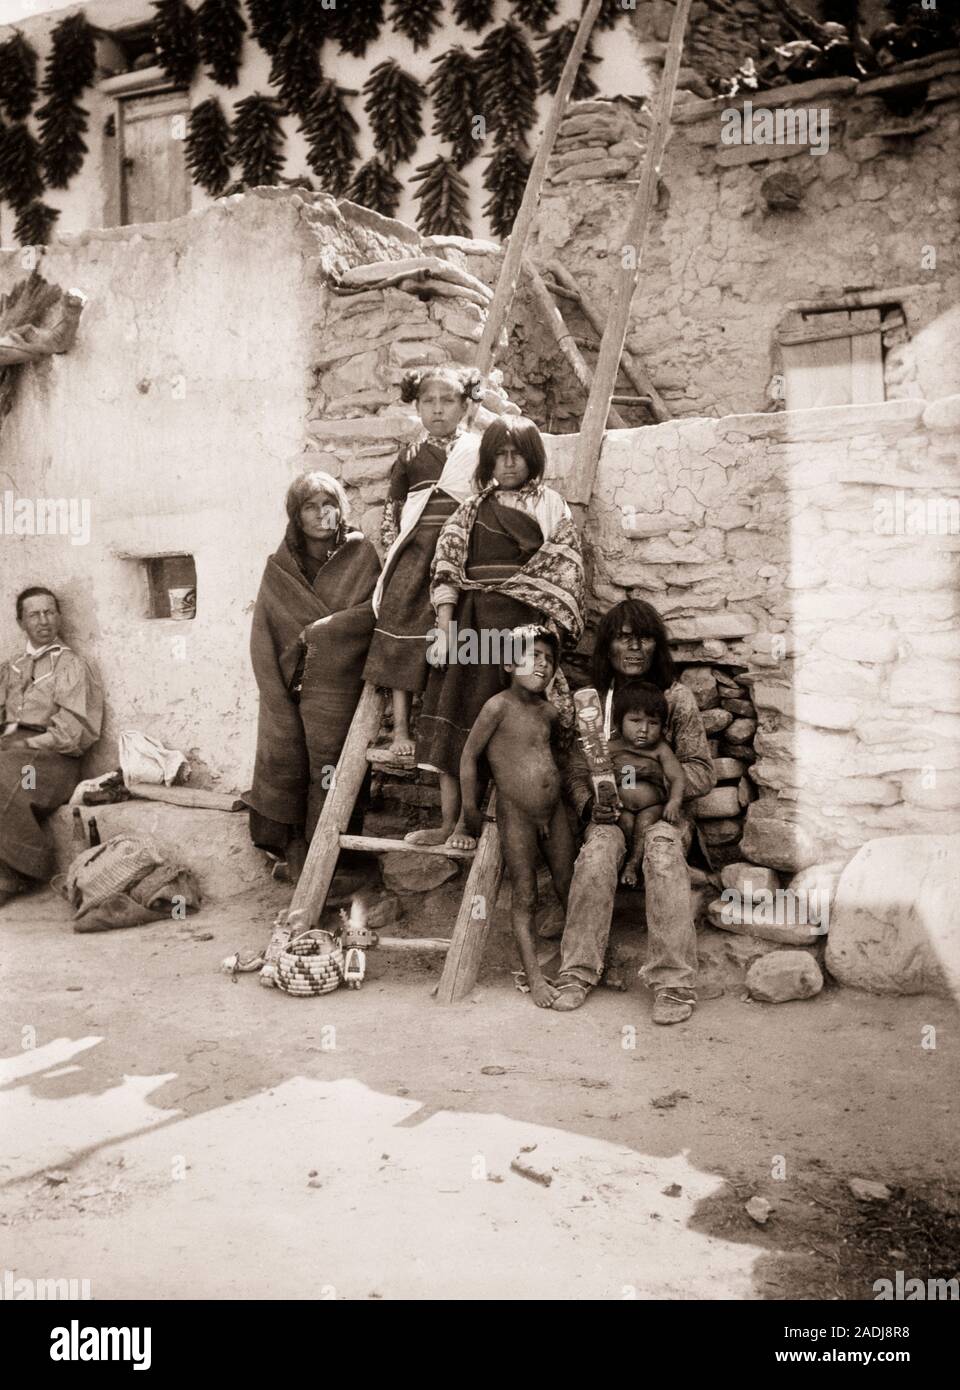 1890 1890 Native American Indian HOPI FAMILLE ADULTES ET ENFANTS POSÉS À LA CAMÉRA À SHIPAULOVI VILLAGE PUEBLO ARIZONA USA - q73426 CPC001 HARS 6 UNITED STATES COPIE ESPACE PLEINE LONGUEUR D'AMITIÉ CHERS PERSONNES VILLAGE INDIENS Etats-unis D'AMÉRIQUE S'OCCUPENT LES HOMMES SIX CADRES PÈRES ADULTES B&W AMÉRIQUE DU NORD DE L'AMÉRIQUE DU NORD CONTACT VISUEL PRETEEN BOY SÉCHÉ ET LES INDIENS DE L'ARIZONA AMERICAN PUEBLO 1890 ADOBE JUVÉNILES MID-ADULT MID-ADULT MAN LES AMÉRINDIENS POSÉS PRÉ-ADO fille préadolescente RISTRA AZ ENSEMBLE NOIR ET BLANC à l'ANCIENNE LES HOPI Banque D'Images